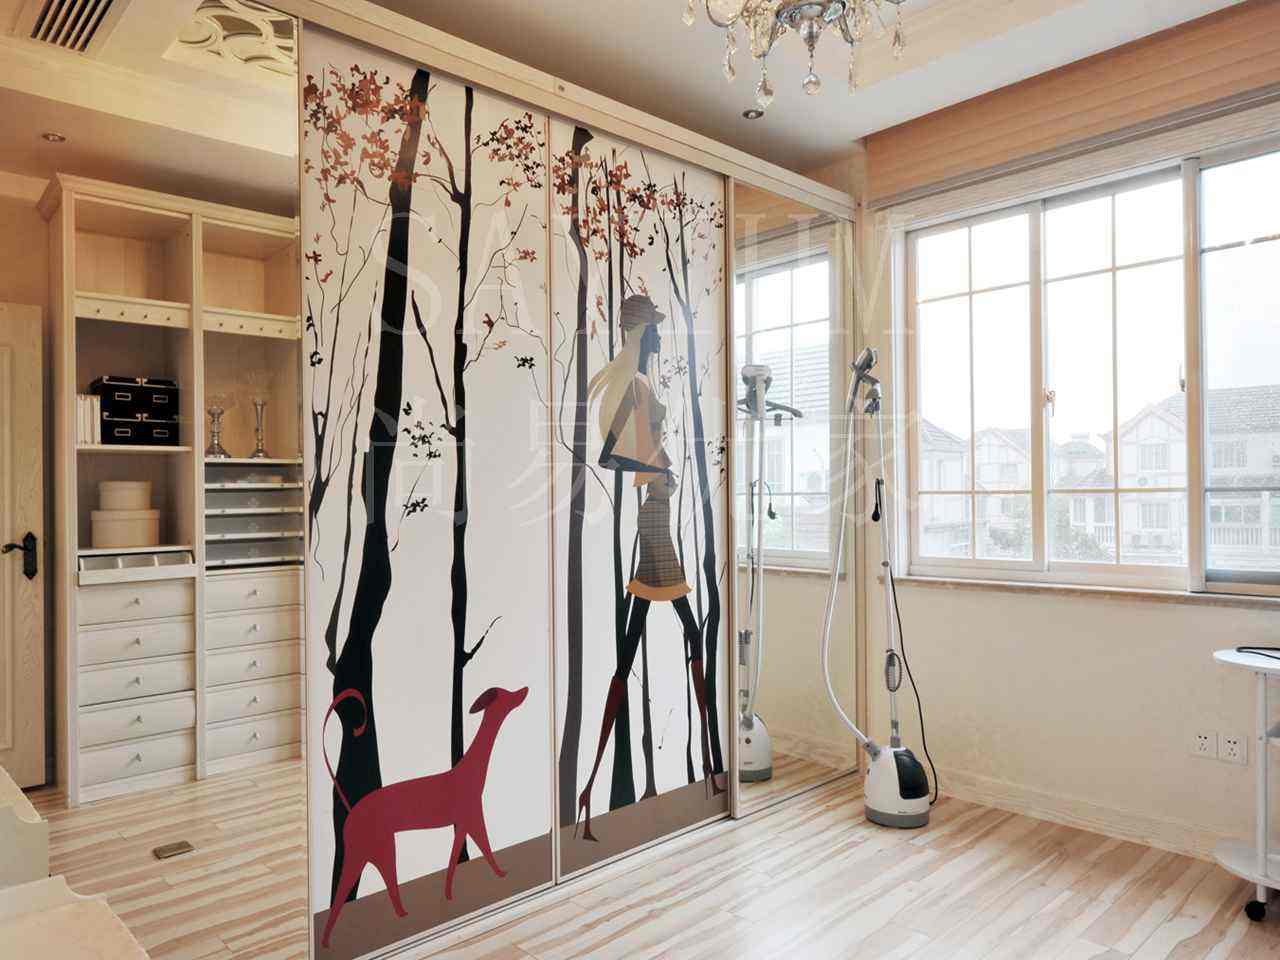 安居印象集成墙饰打造艺术级生活空间